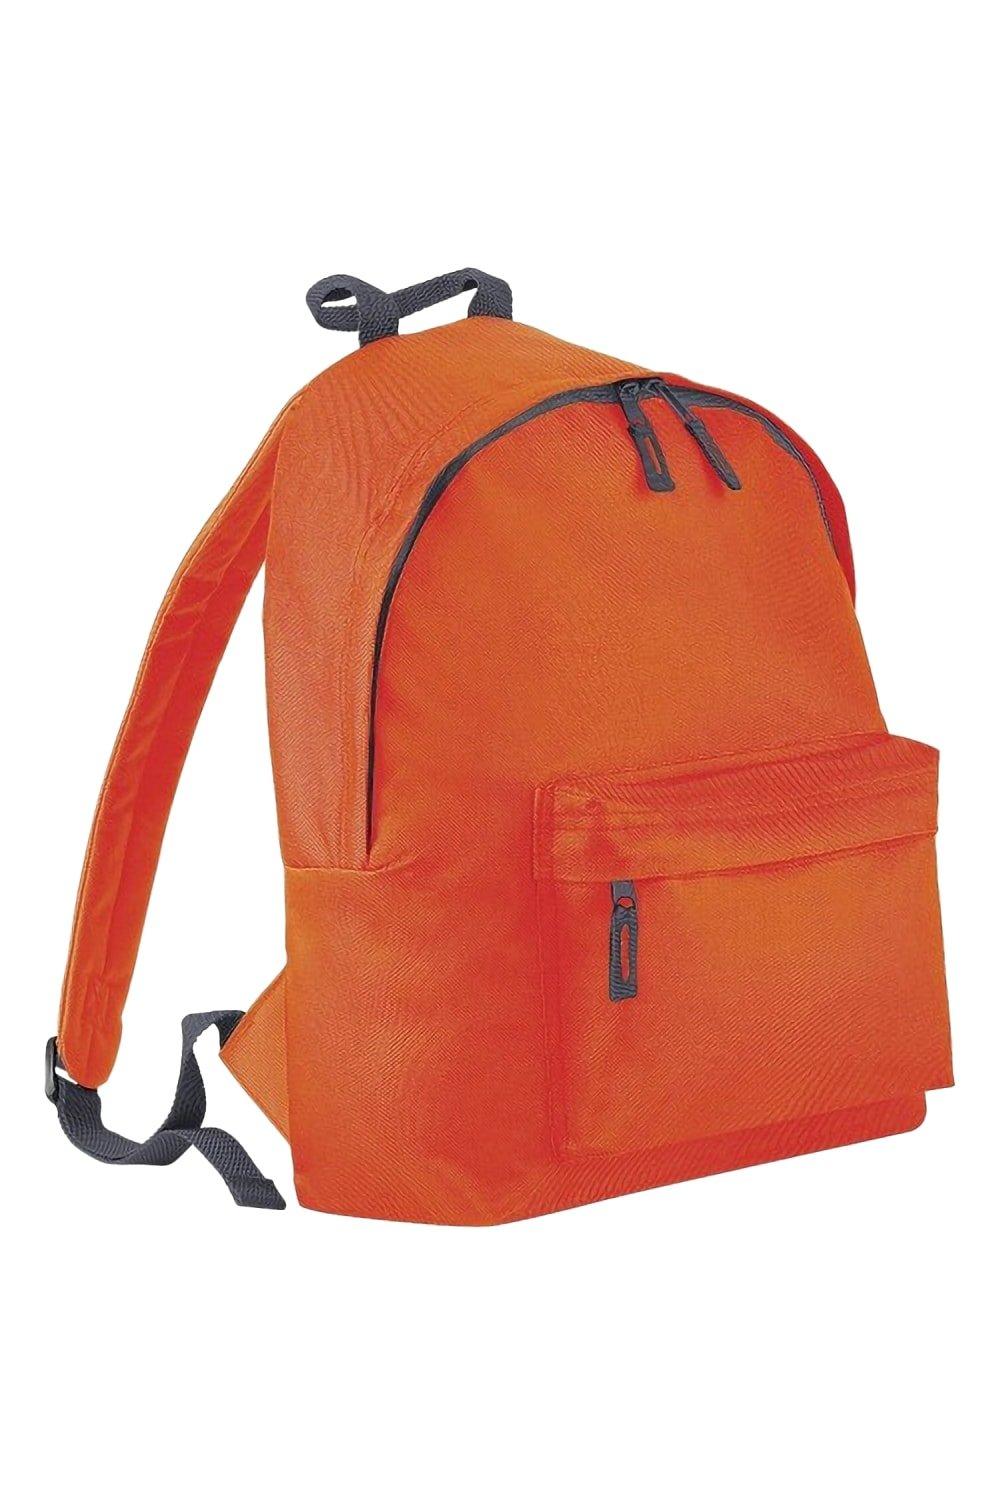 Модный рюкзак / рюкзак (14 литров) (2 шт. в упаковке) Bagbase, оранжевый trixie купалка для хомяков и мышей дерево 22 х 12 х 12 см 63004 0 325 кг 56348 1 шт